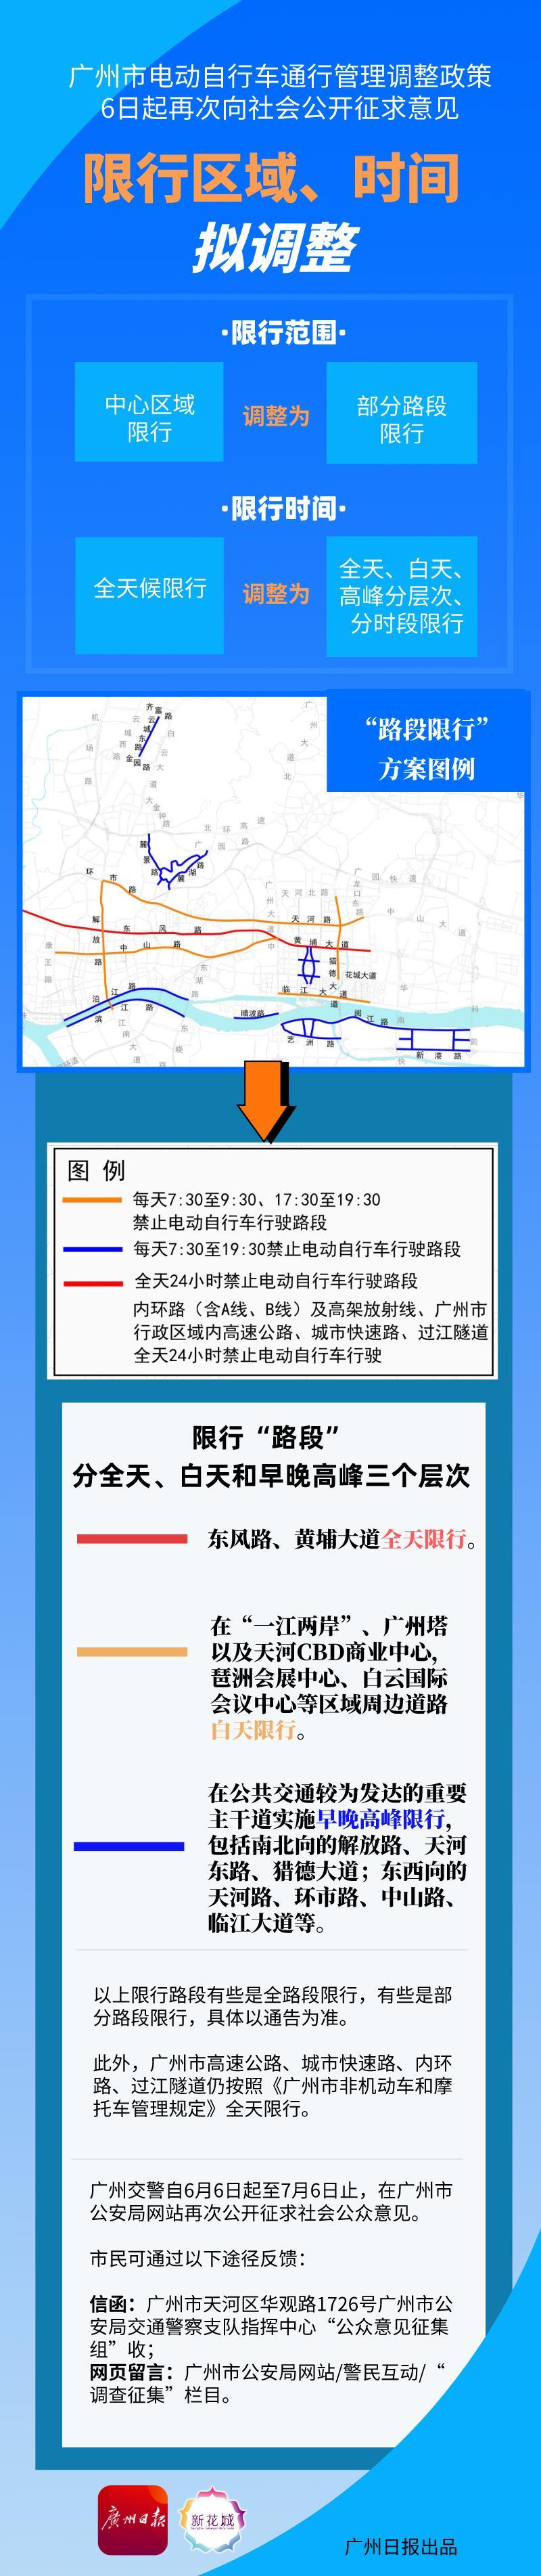 一圖丨廣州電動自行車管理政策再次征求意見